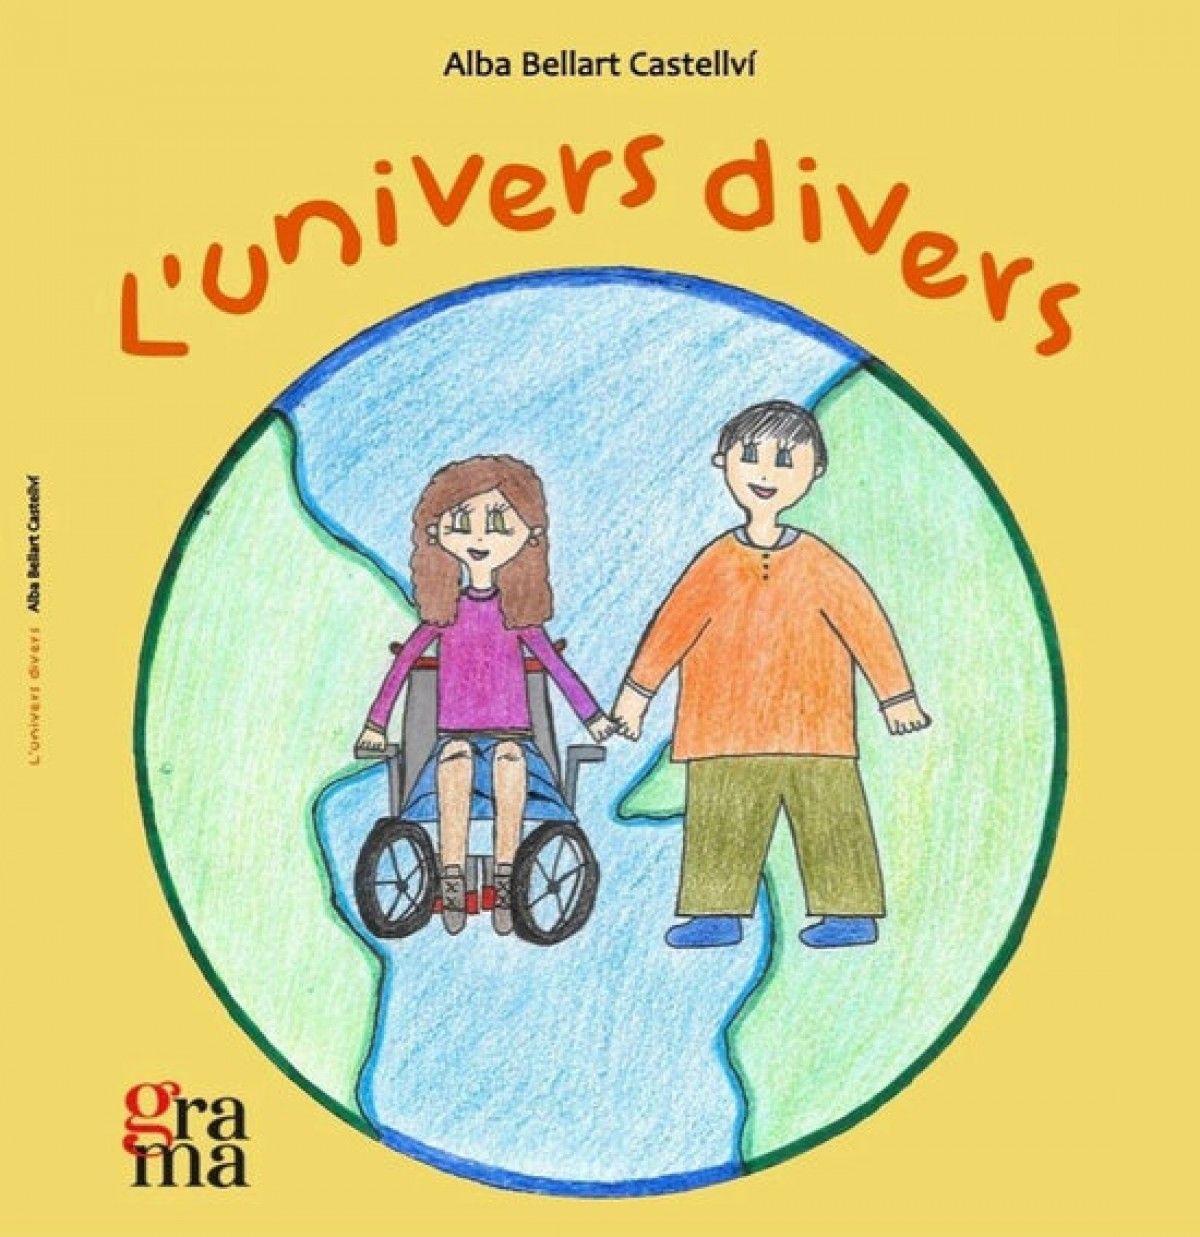 Portada del llibre 'L'univers divers' editat per l'IRBLleida per visibilitzar i conscienciar sobre les malalties minoritàries